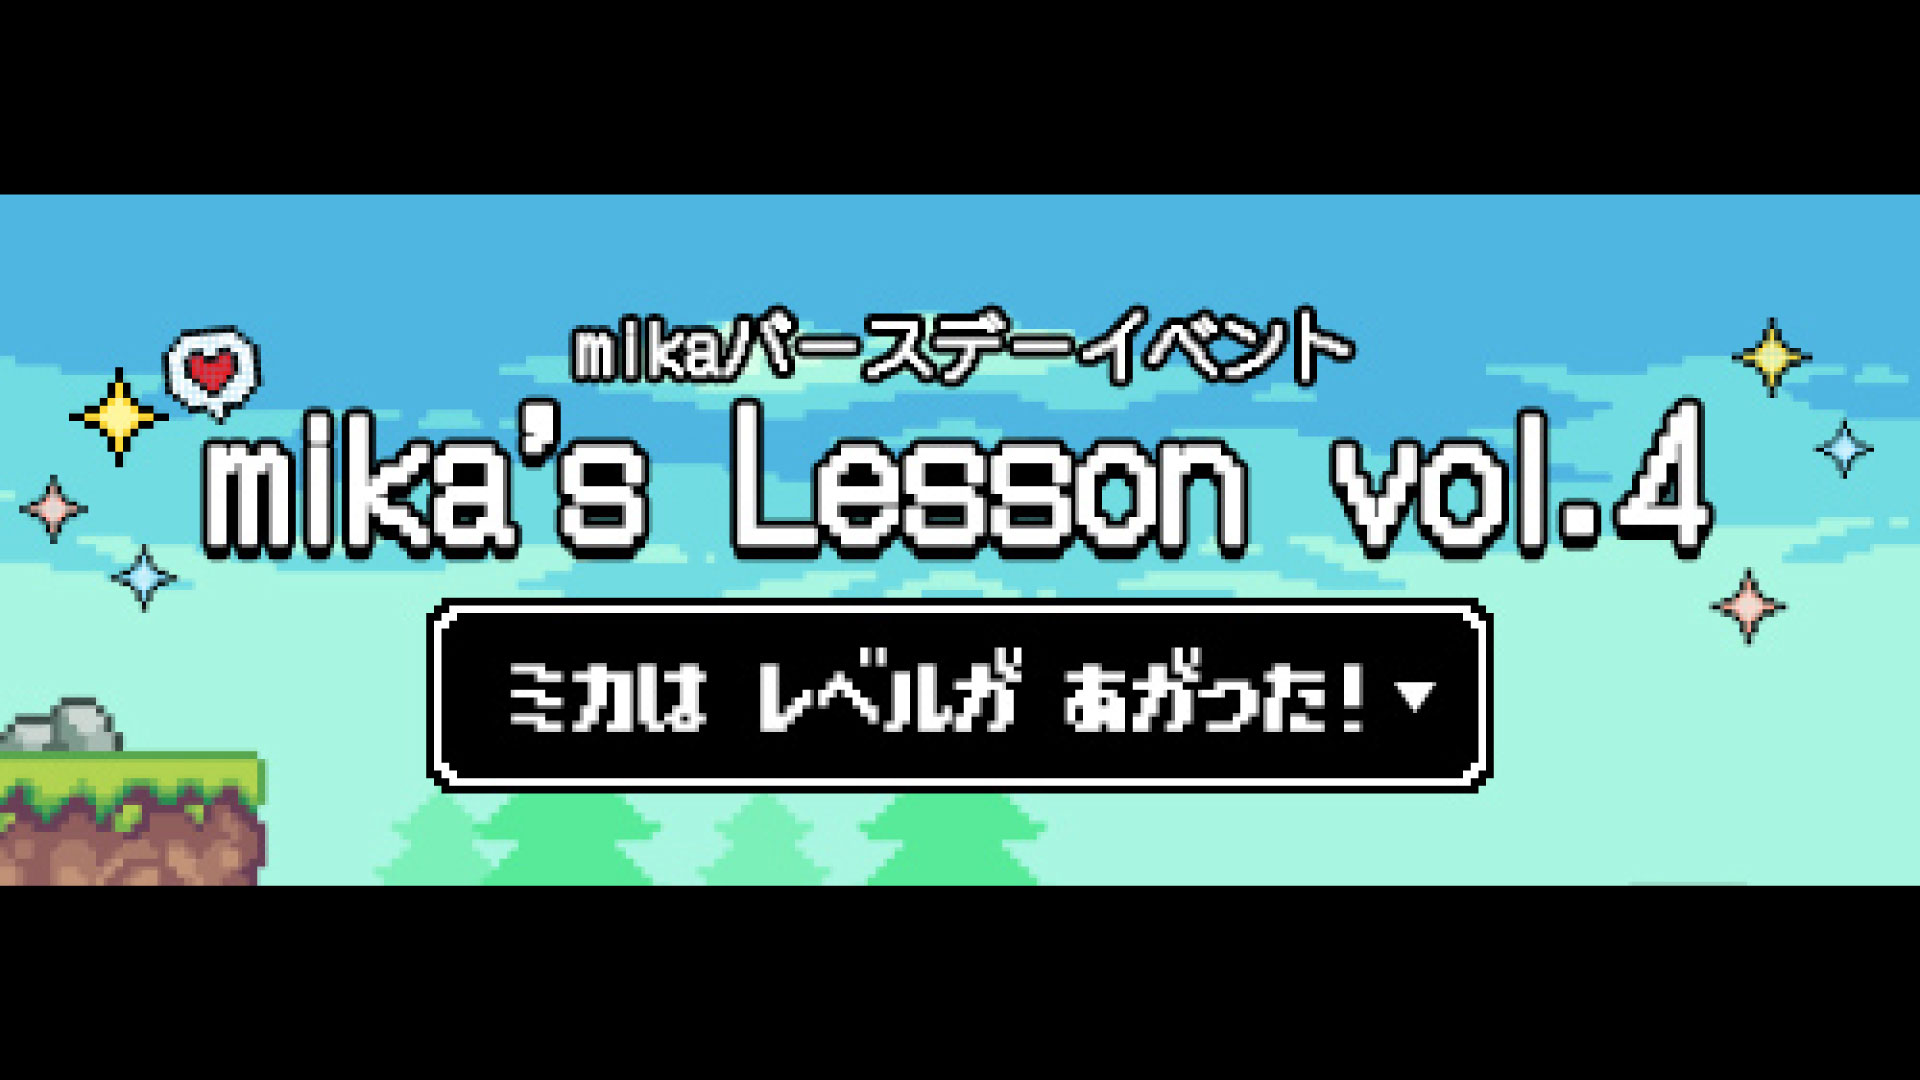 mikaバースデーイベント「mika’s Lesson vol.4 ～ミカは レベルが あがった！～」